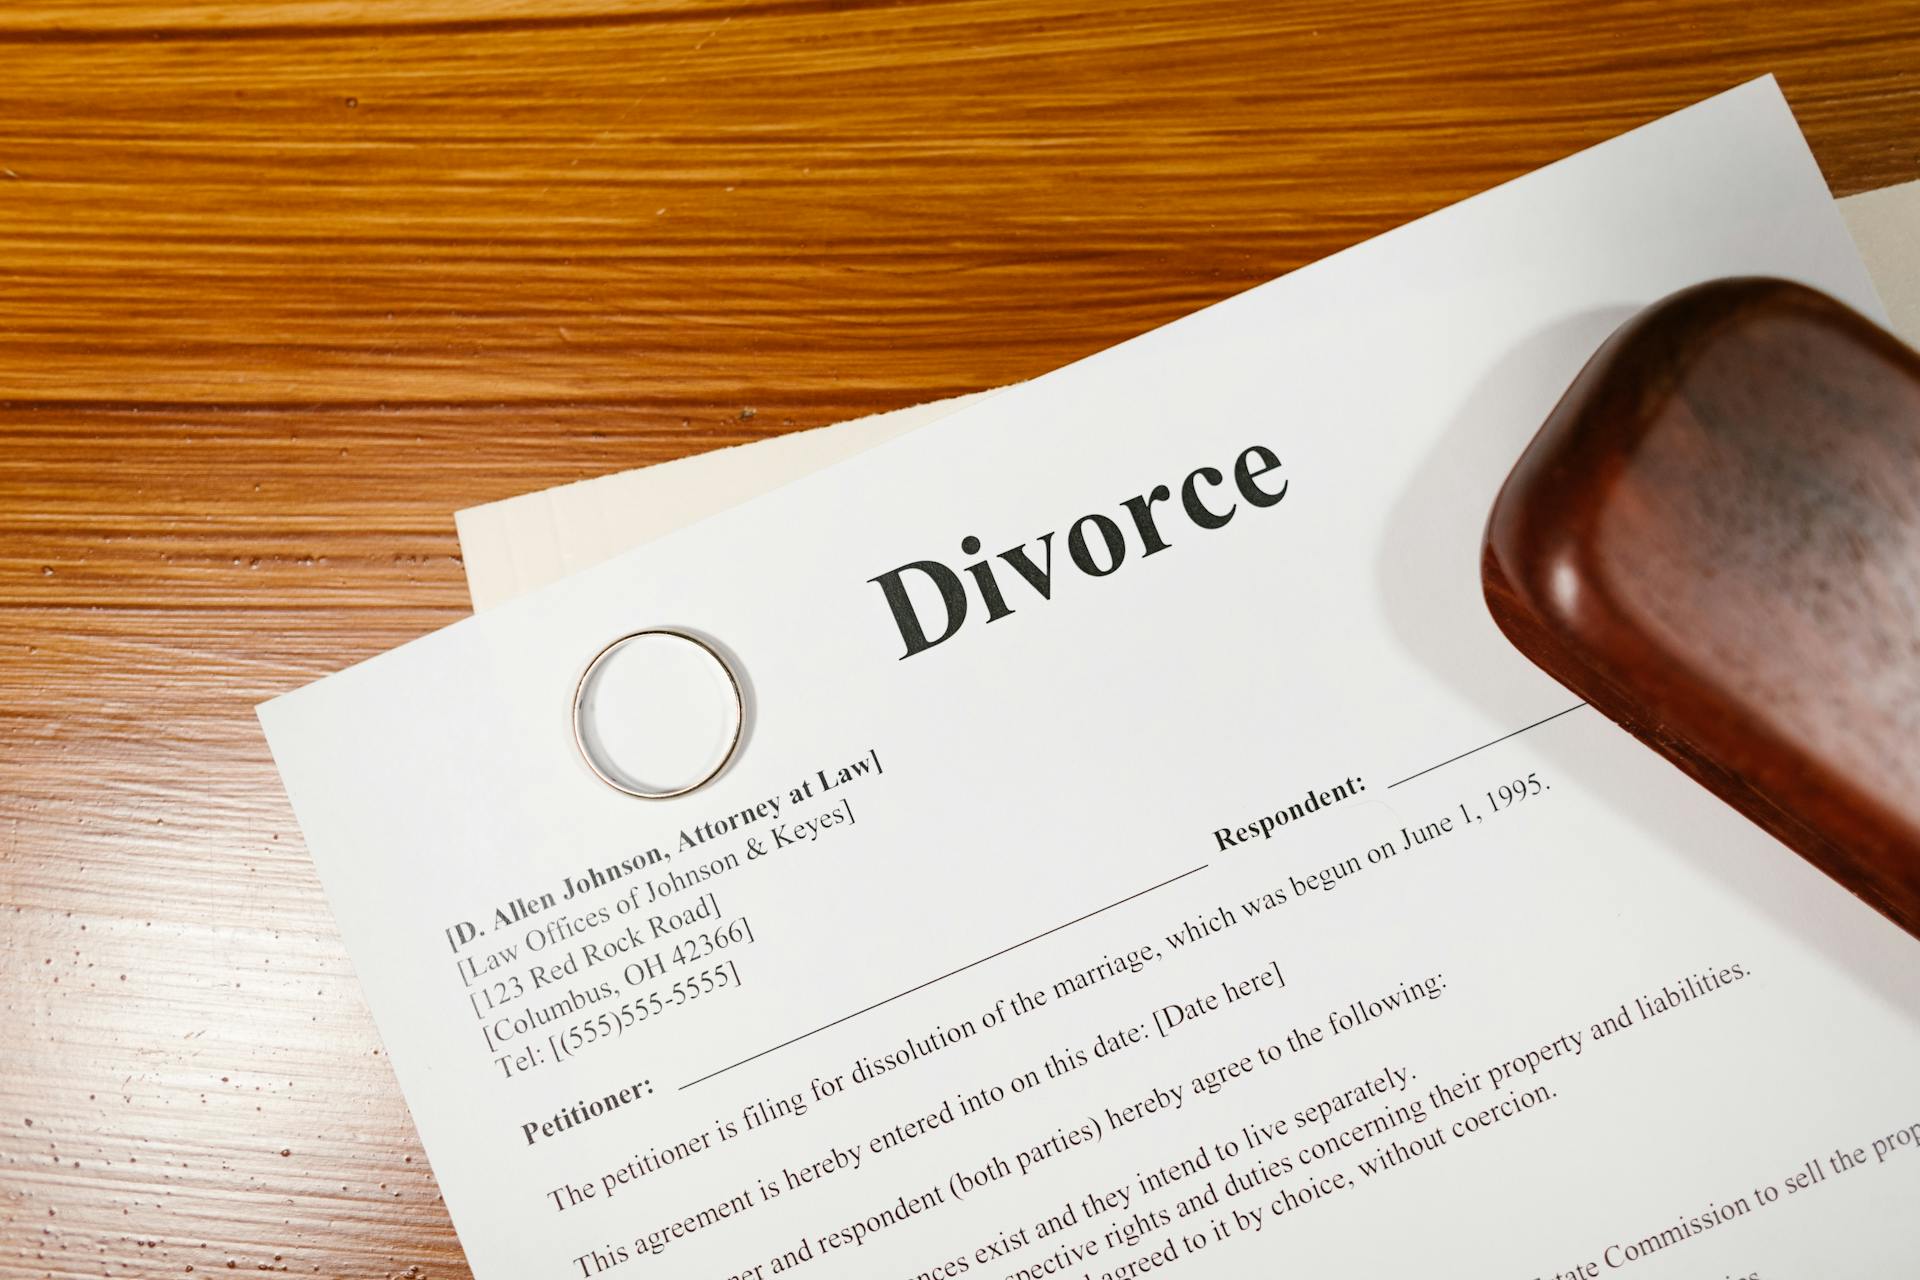 Papeles de divorcio sobre una mesa de madera | Fuente: Pexels